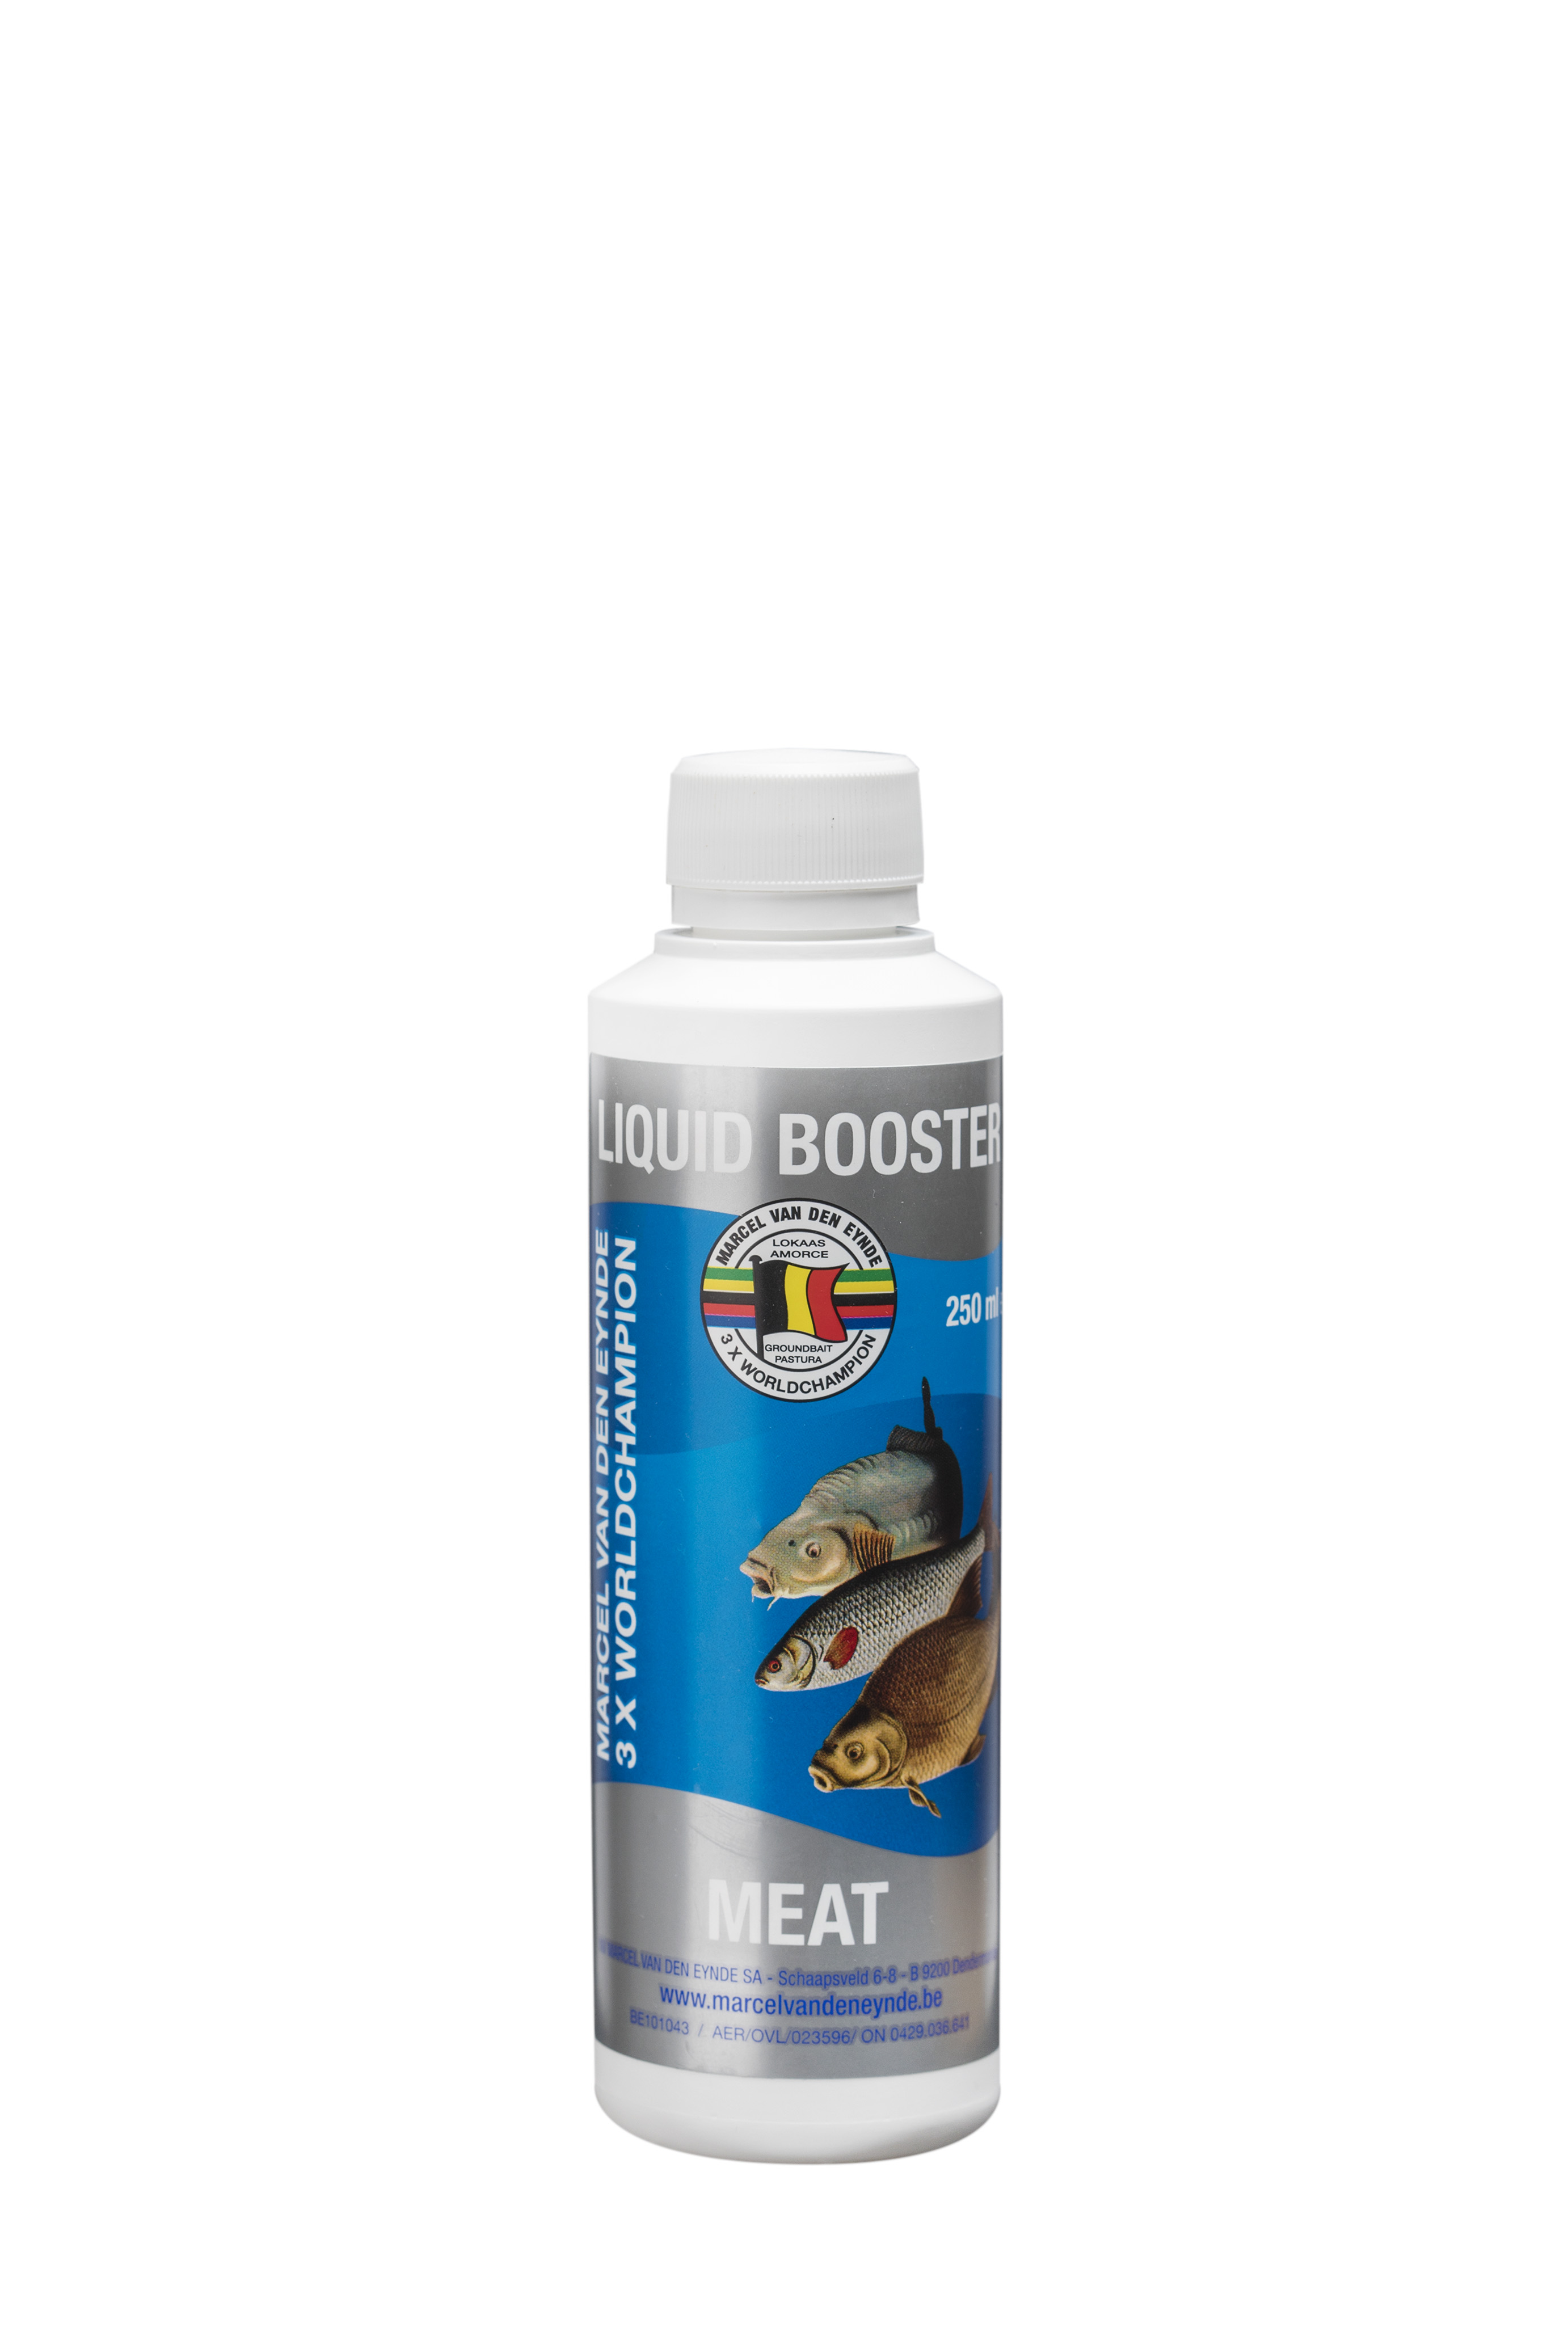 VDE Liquid Booster Meat 250 ml (Meso) -  Ime tečnog pojačivača govori sve, poboljšaće ukus i miris vašeg mamca. Koristili smo različite sastojke kako bismo napravili ukusan proizvod koji se može koristiti u mamcima, peletima i česticama. Tečni pojačivači su mnogo intenzivniji od našeg asortimana tekućih aroma, zato preporučujemo upotrebu 125 ml za 4 kg mamaca.  Cijena: 12.50 BAM